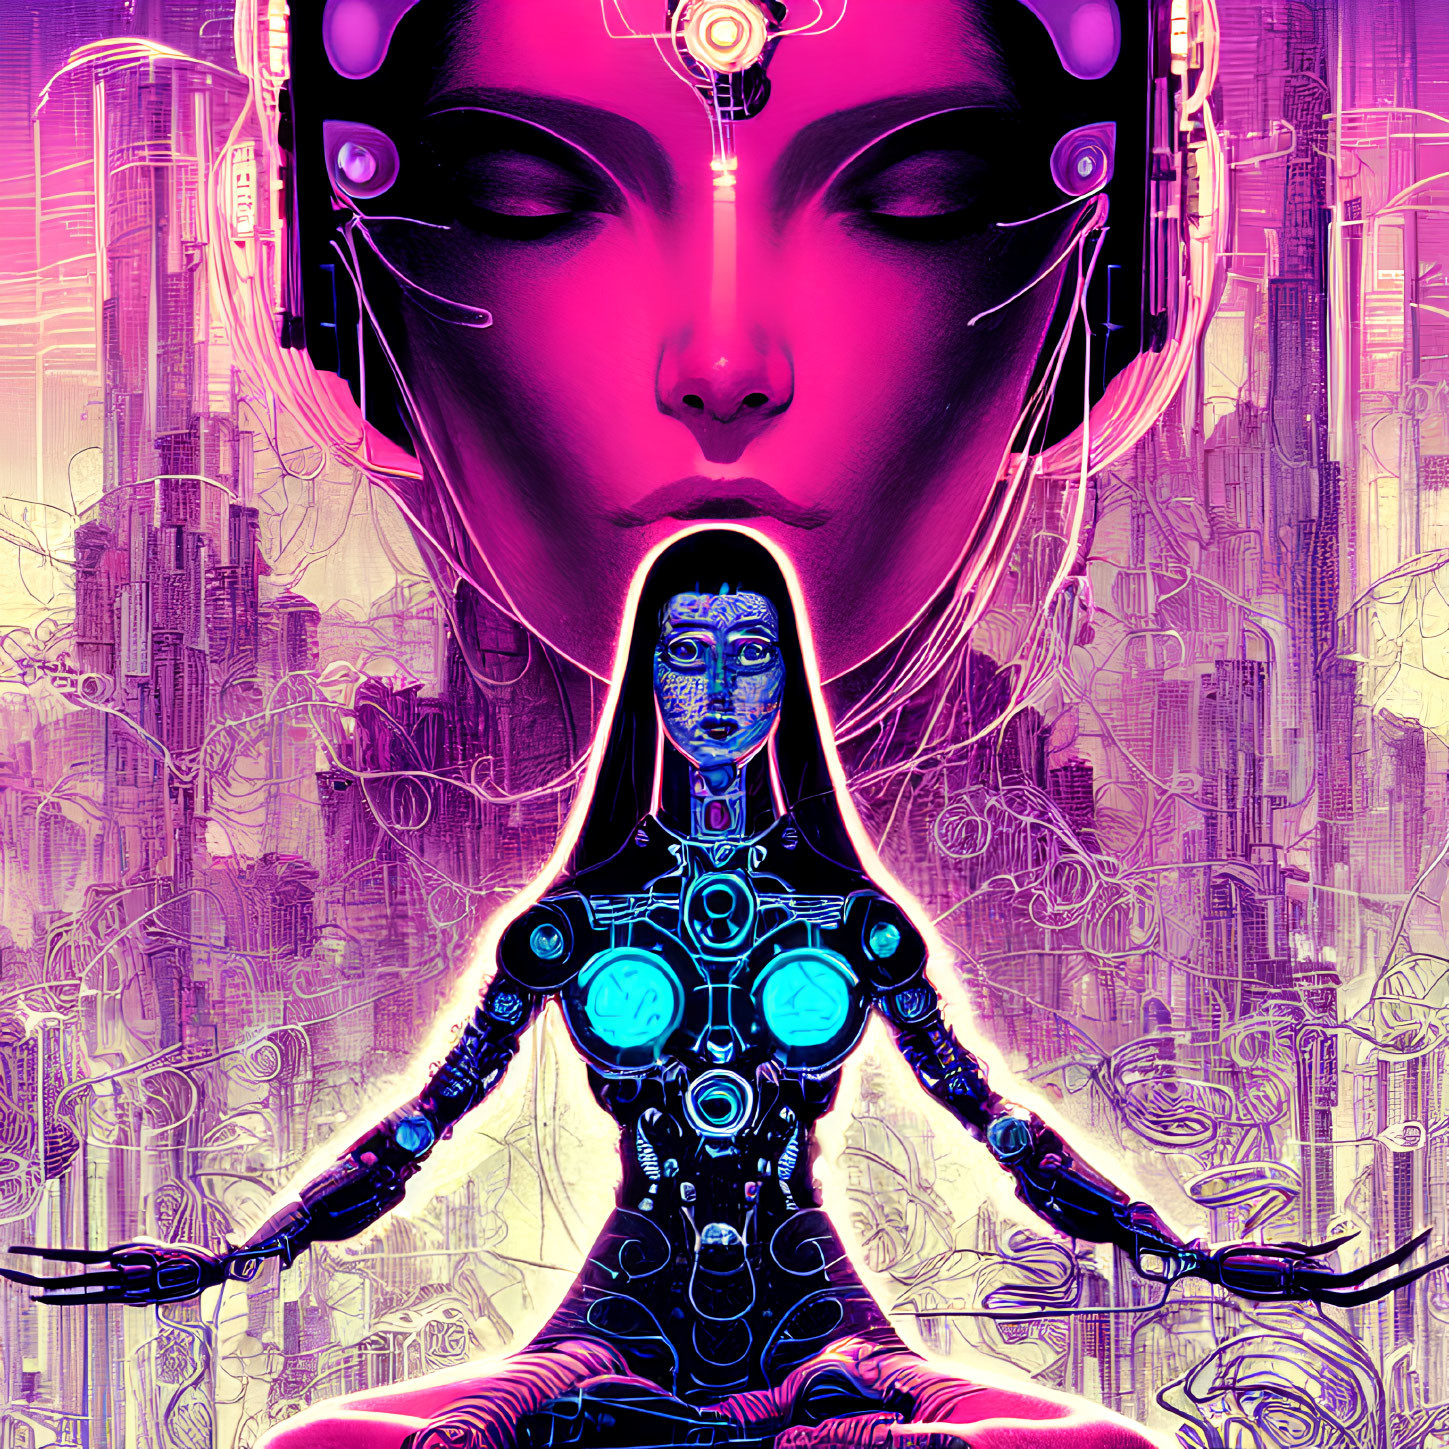 Colorful Female Cyborg Illustration in Futuristic Cityscape, Pink & Purple Palette